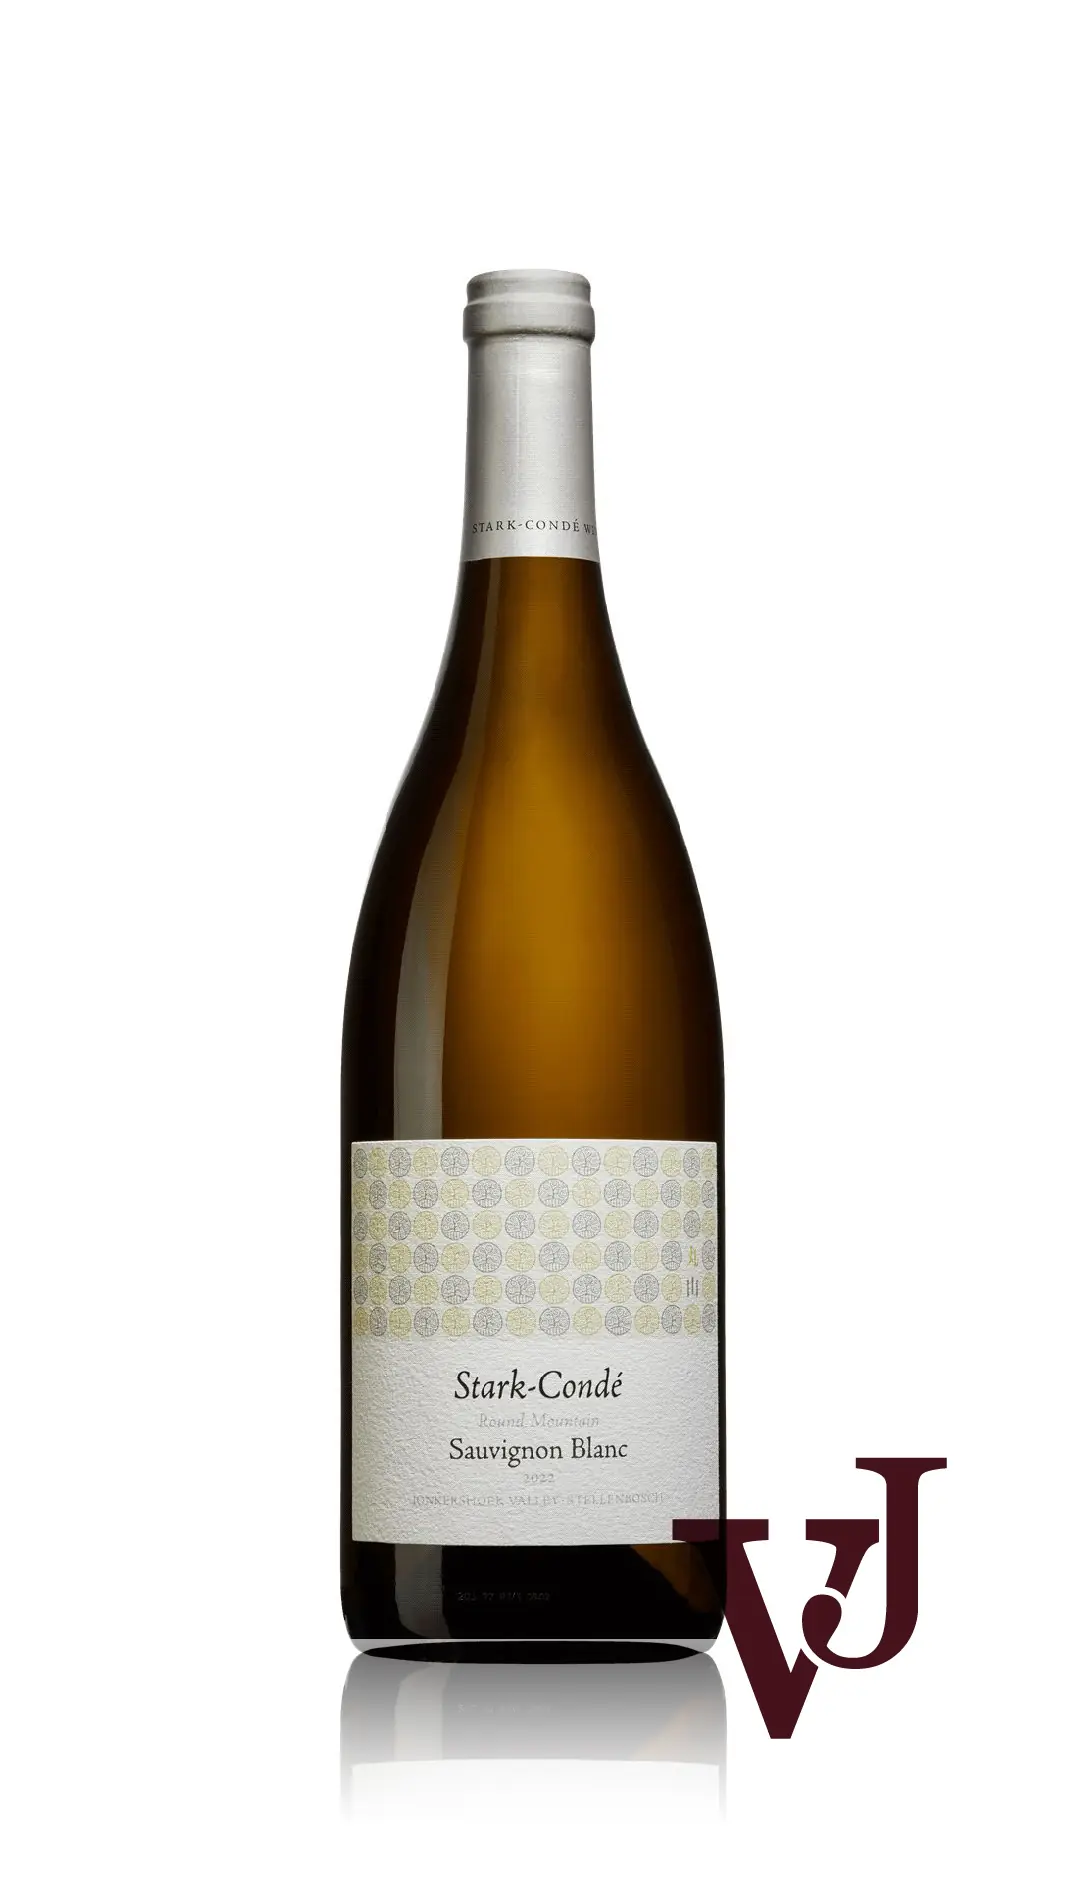 Vitt Vin - Stark-Condé Round Mountain Sauvignon Blanc 2022 artikel nummer 9017701 från producenten Stark-Condé Wines från området Sydafrika - Vinjournalen.se